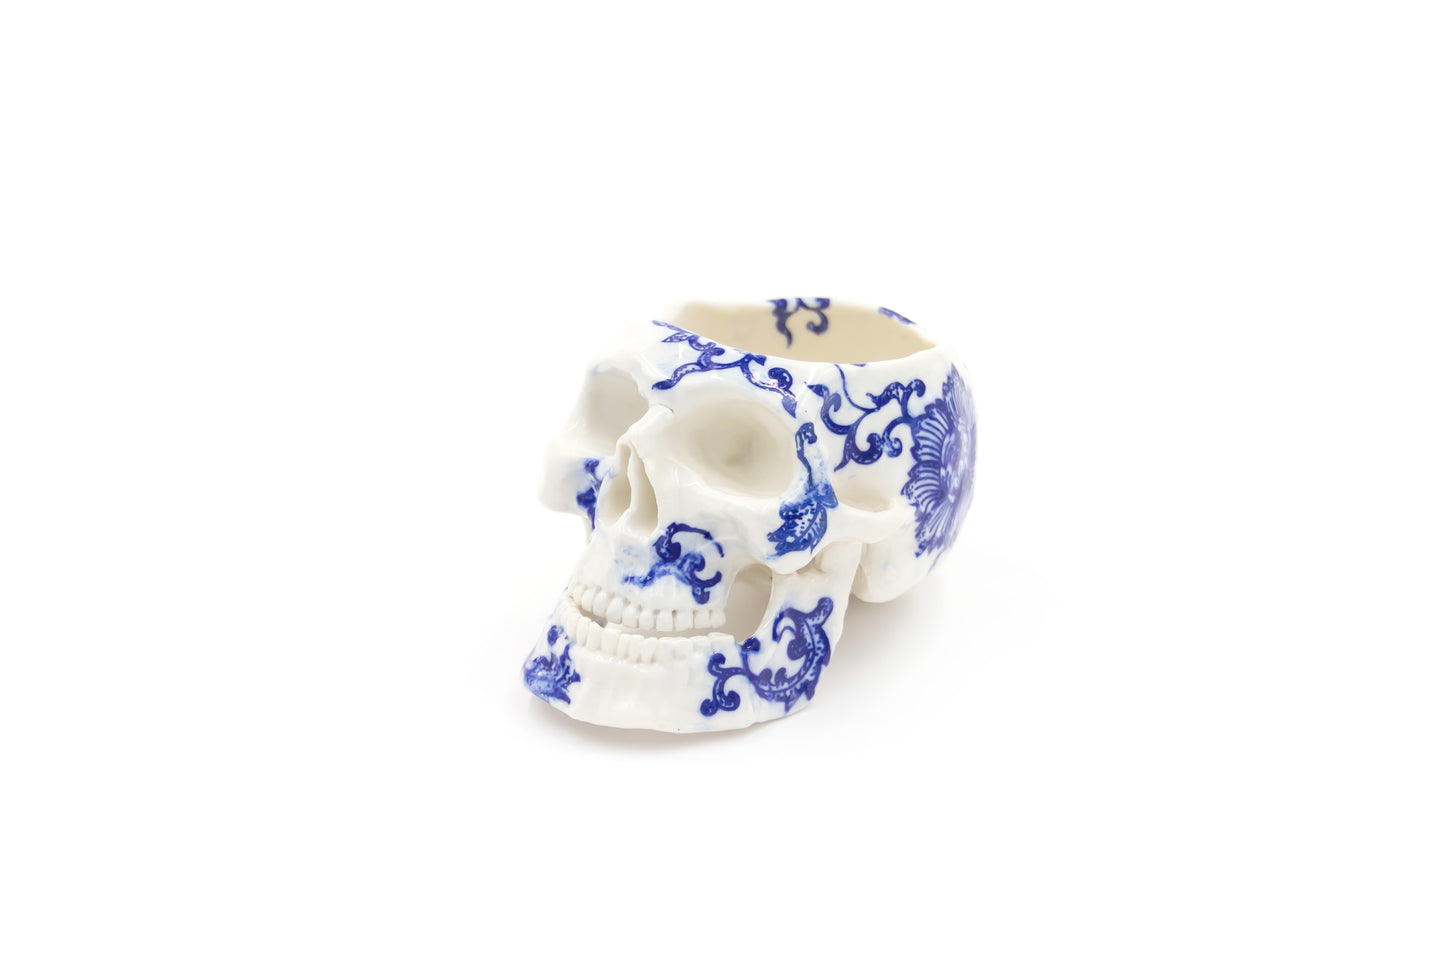 Czaszka-szkatułka porcelanowa w kolorze białym ze wzorem oraz otwieraną żuchwą